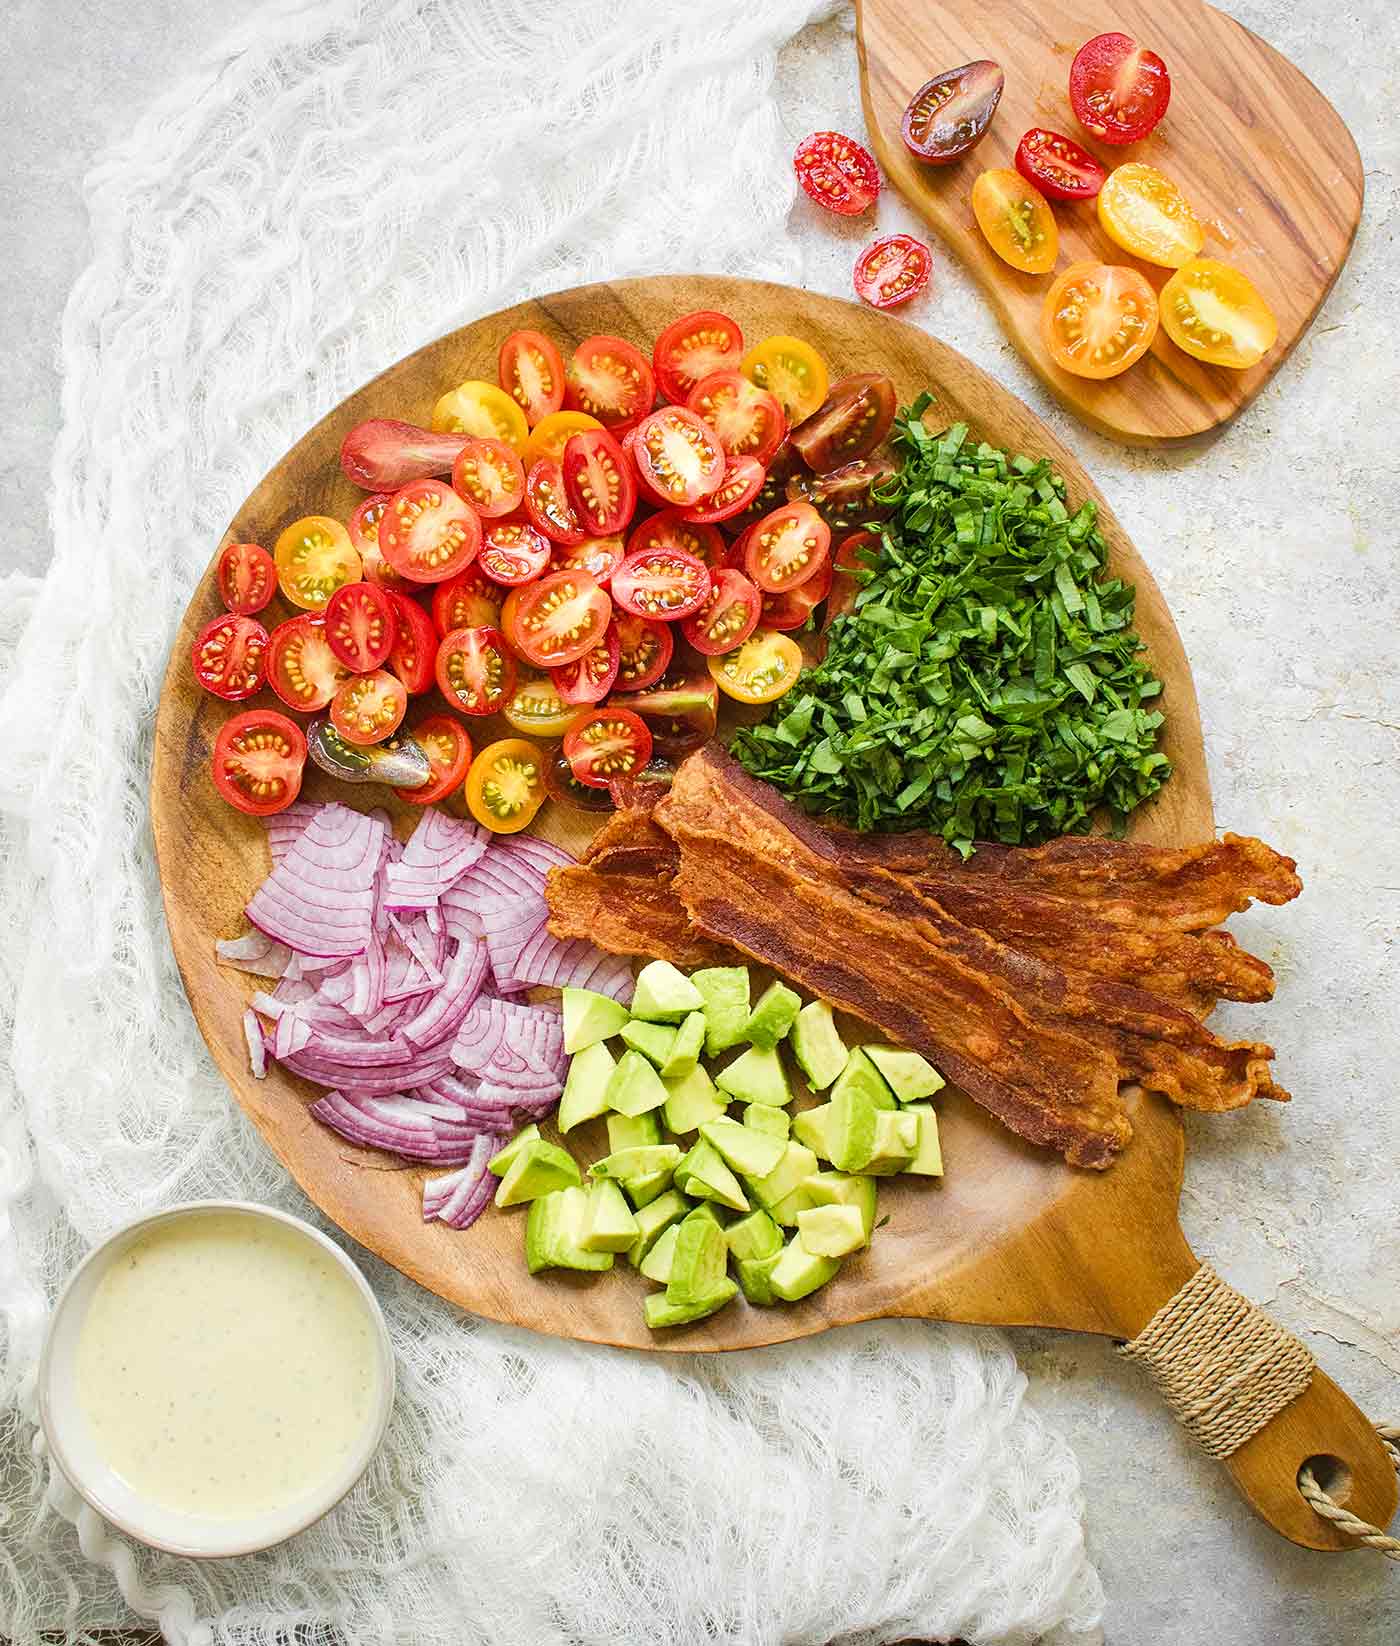 Ingredients for BLT Pasta Salad arranged on a wooden serving board